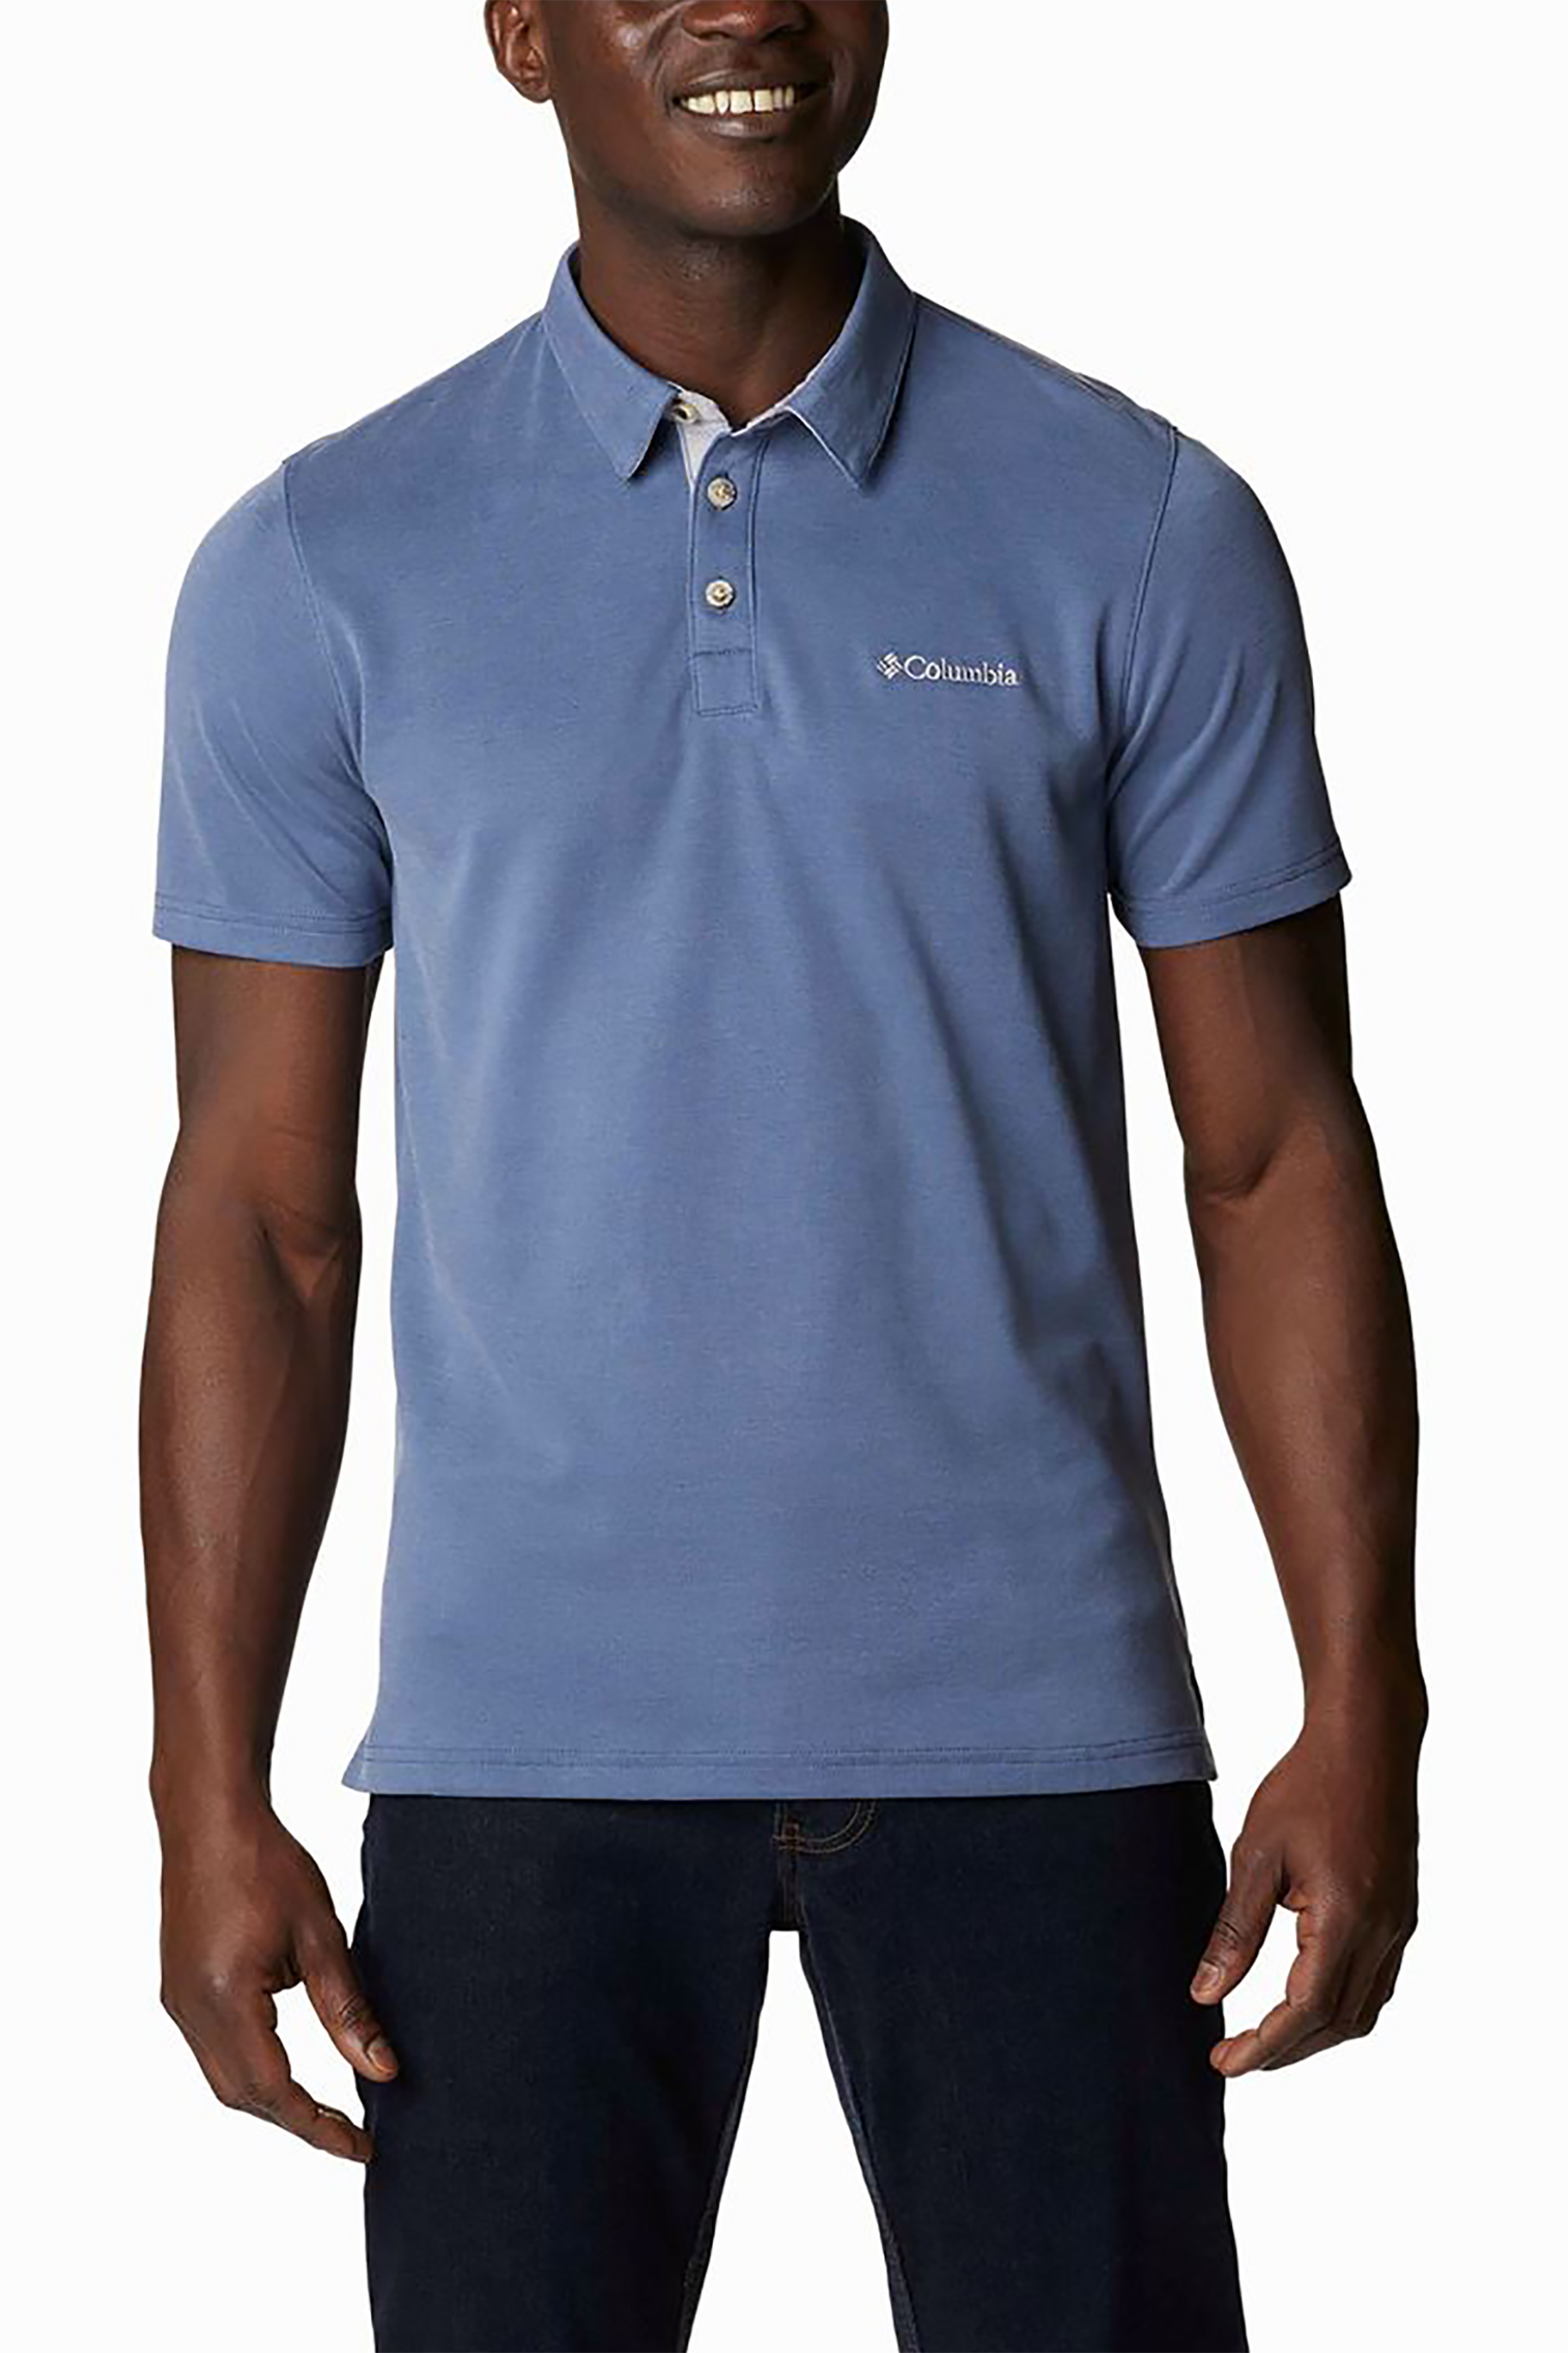 Ανδρική Μόδα > Ανδρικά Ρούχα > Ανδρικές Μπλούζες > Ανδρικές Μπλούζες Πολο Columbia ανδρική μπλούζα πόλο "Nelson Point™" - EO0035478L Μπλε